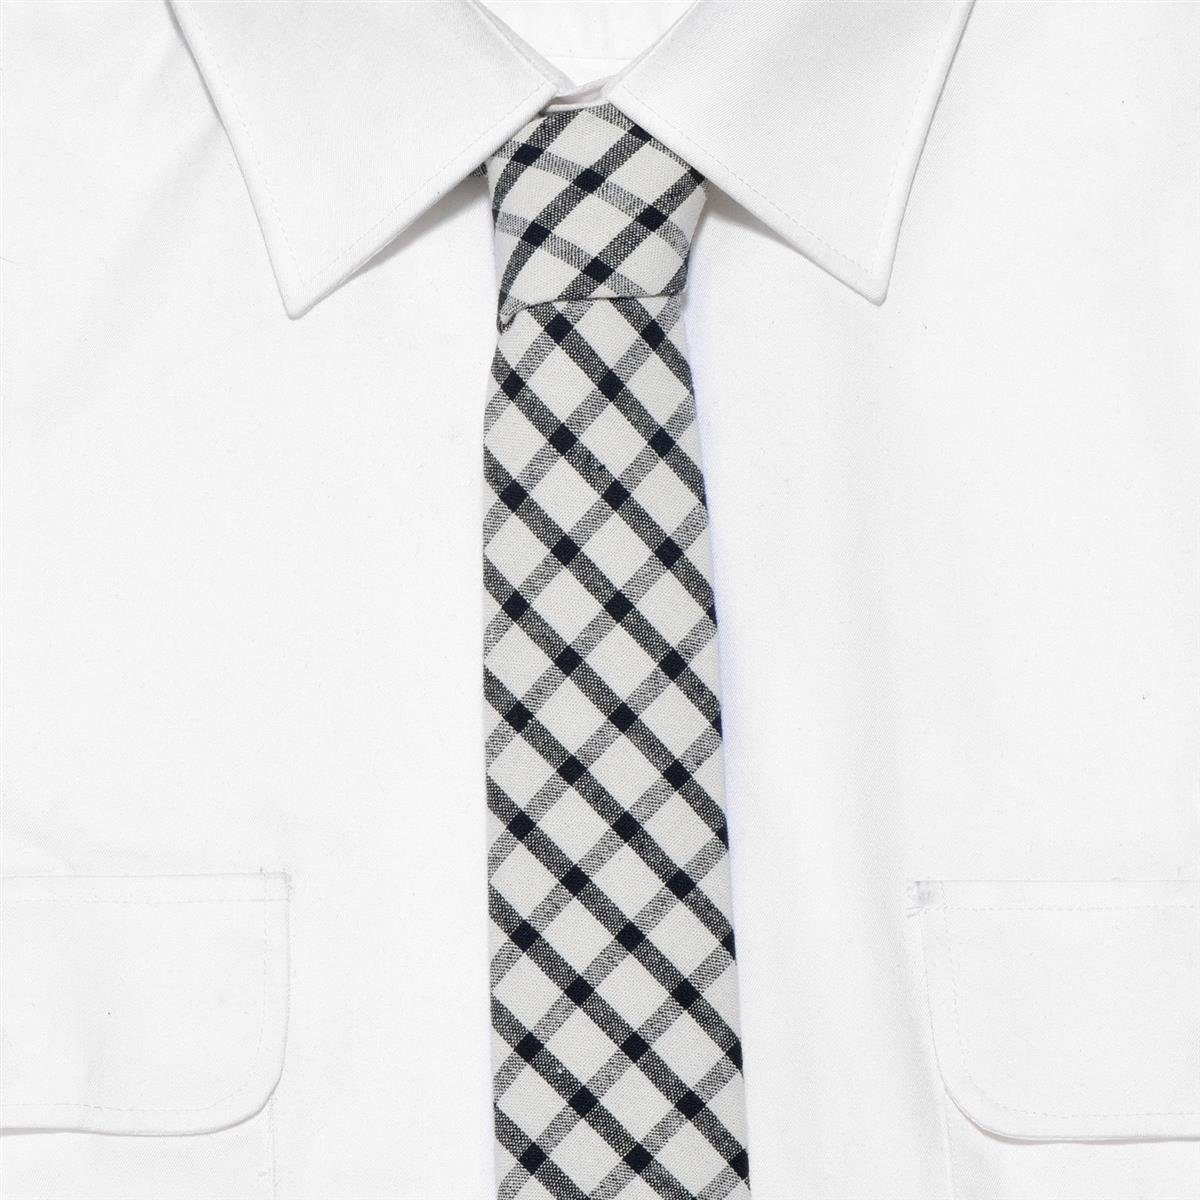 DonDon 1-St., cm Baumwolle, Streifen Büro Krawatte) Krawatte Krawatte kariert 1 1x mit 6 festliche oder elfenbein-weiß-schwarz Karos (Packung, für gestreift, Veranstaltungen oder kariert Herren oder